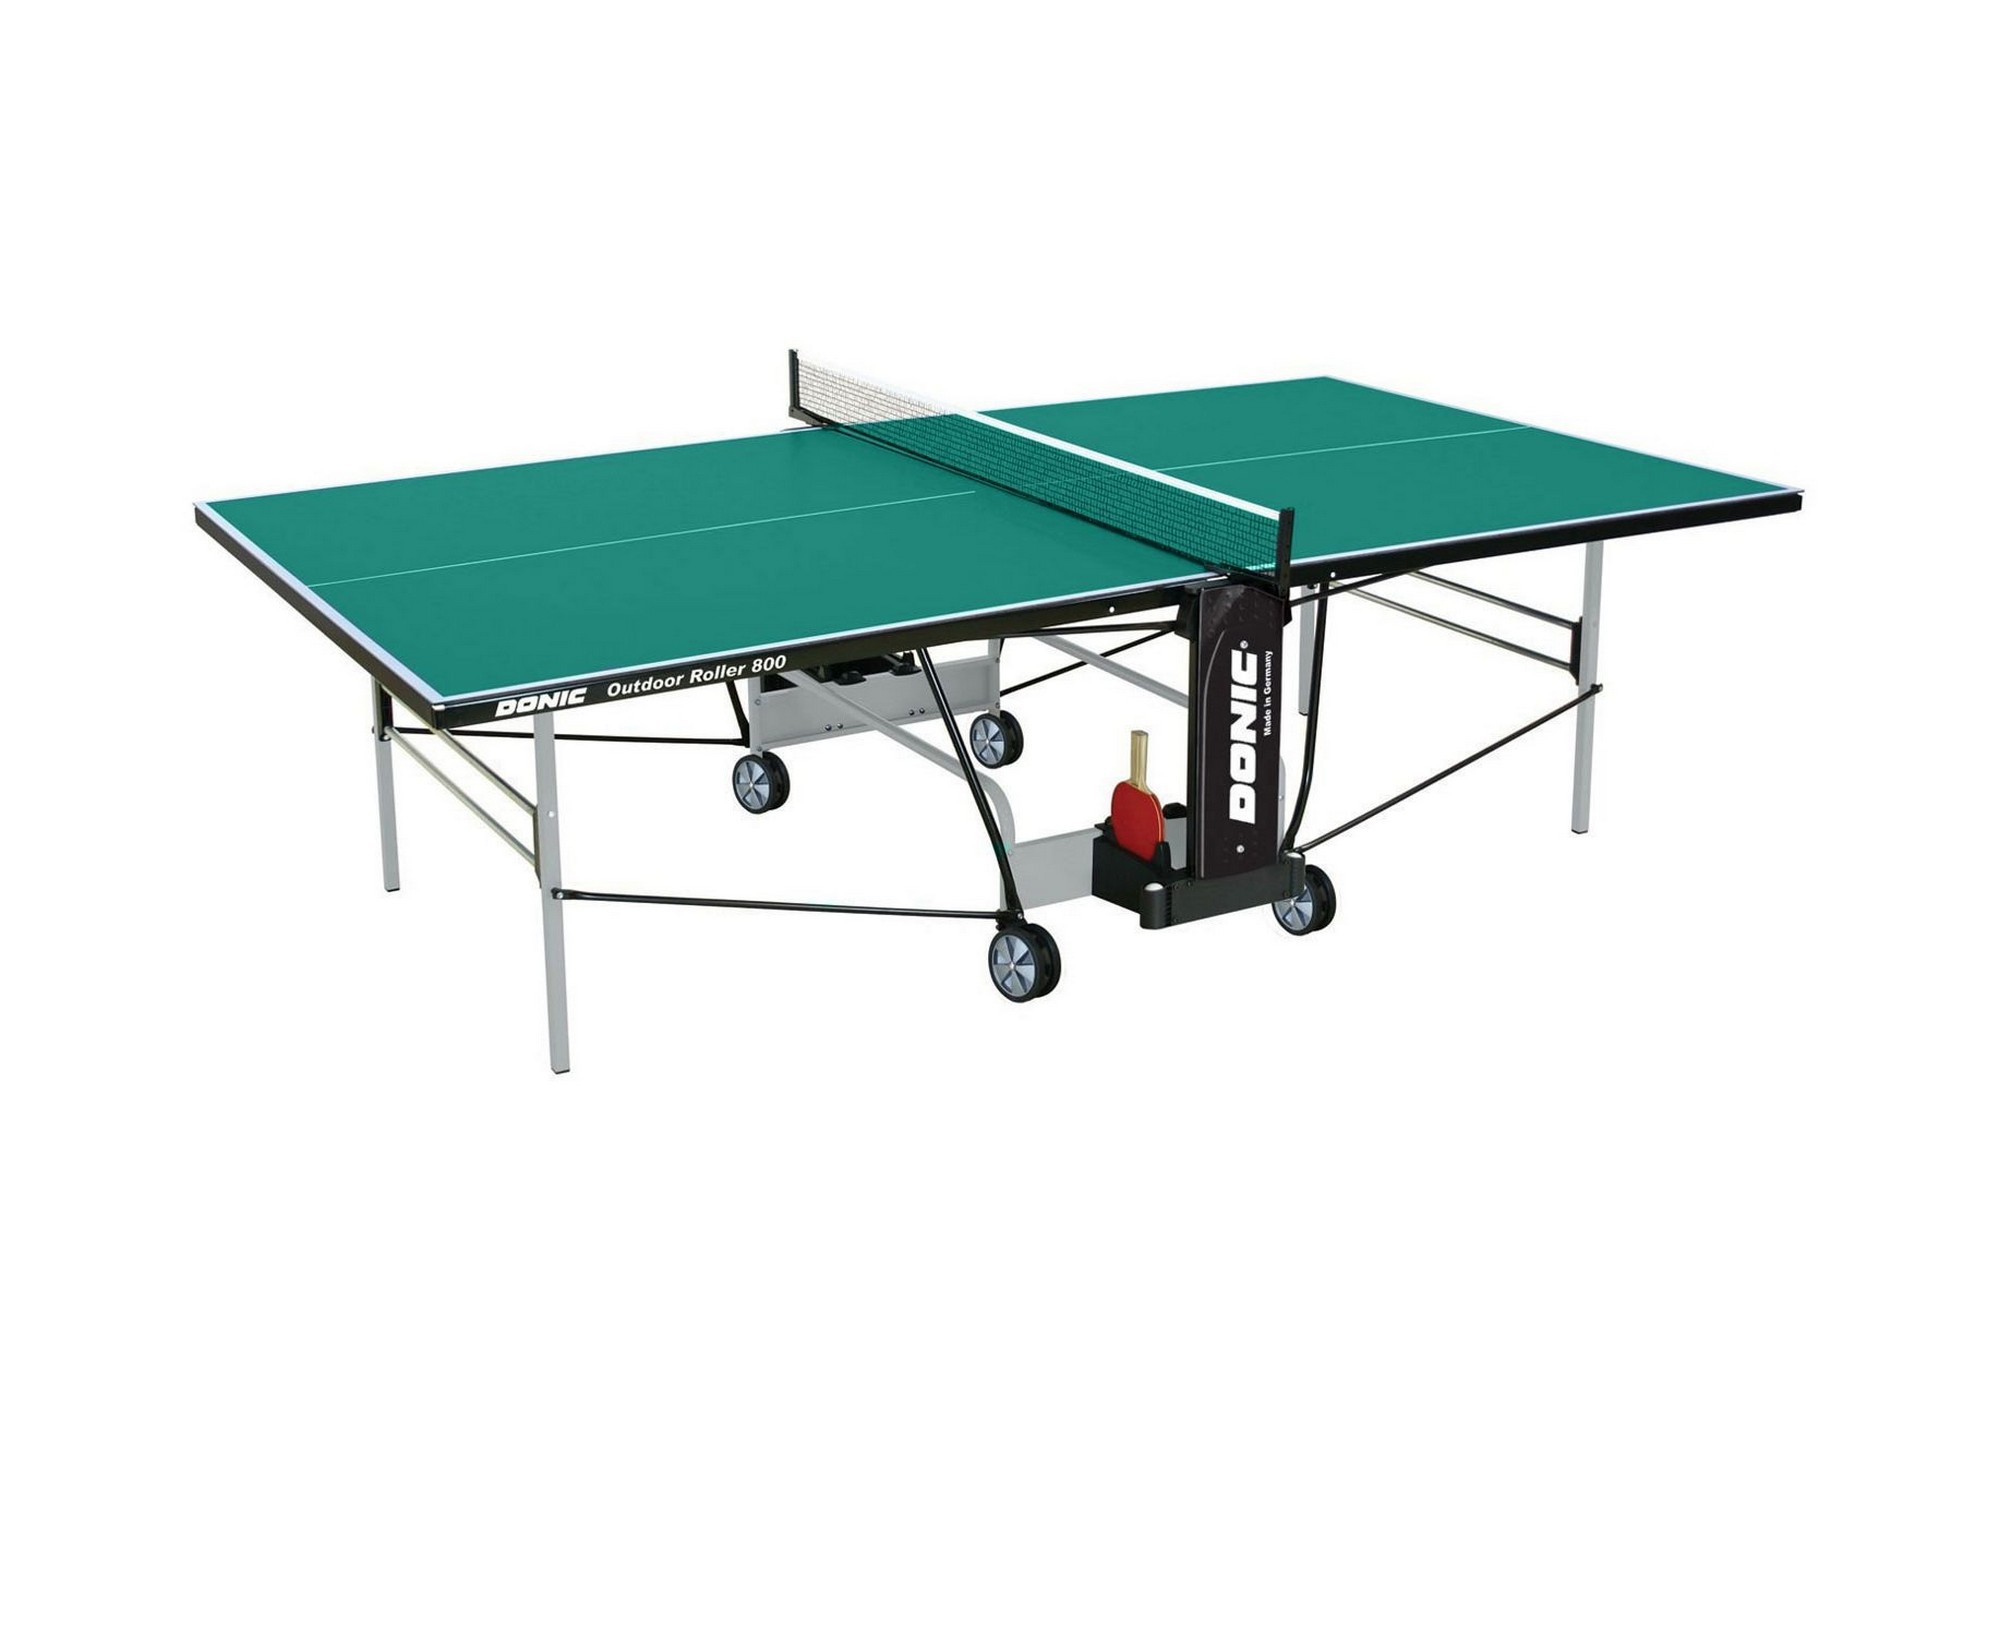 Теннисный стол Donic Outdoor Roller 800-5 230296-G зеленый,  - купить со скидкой